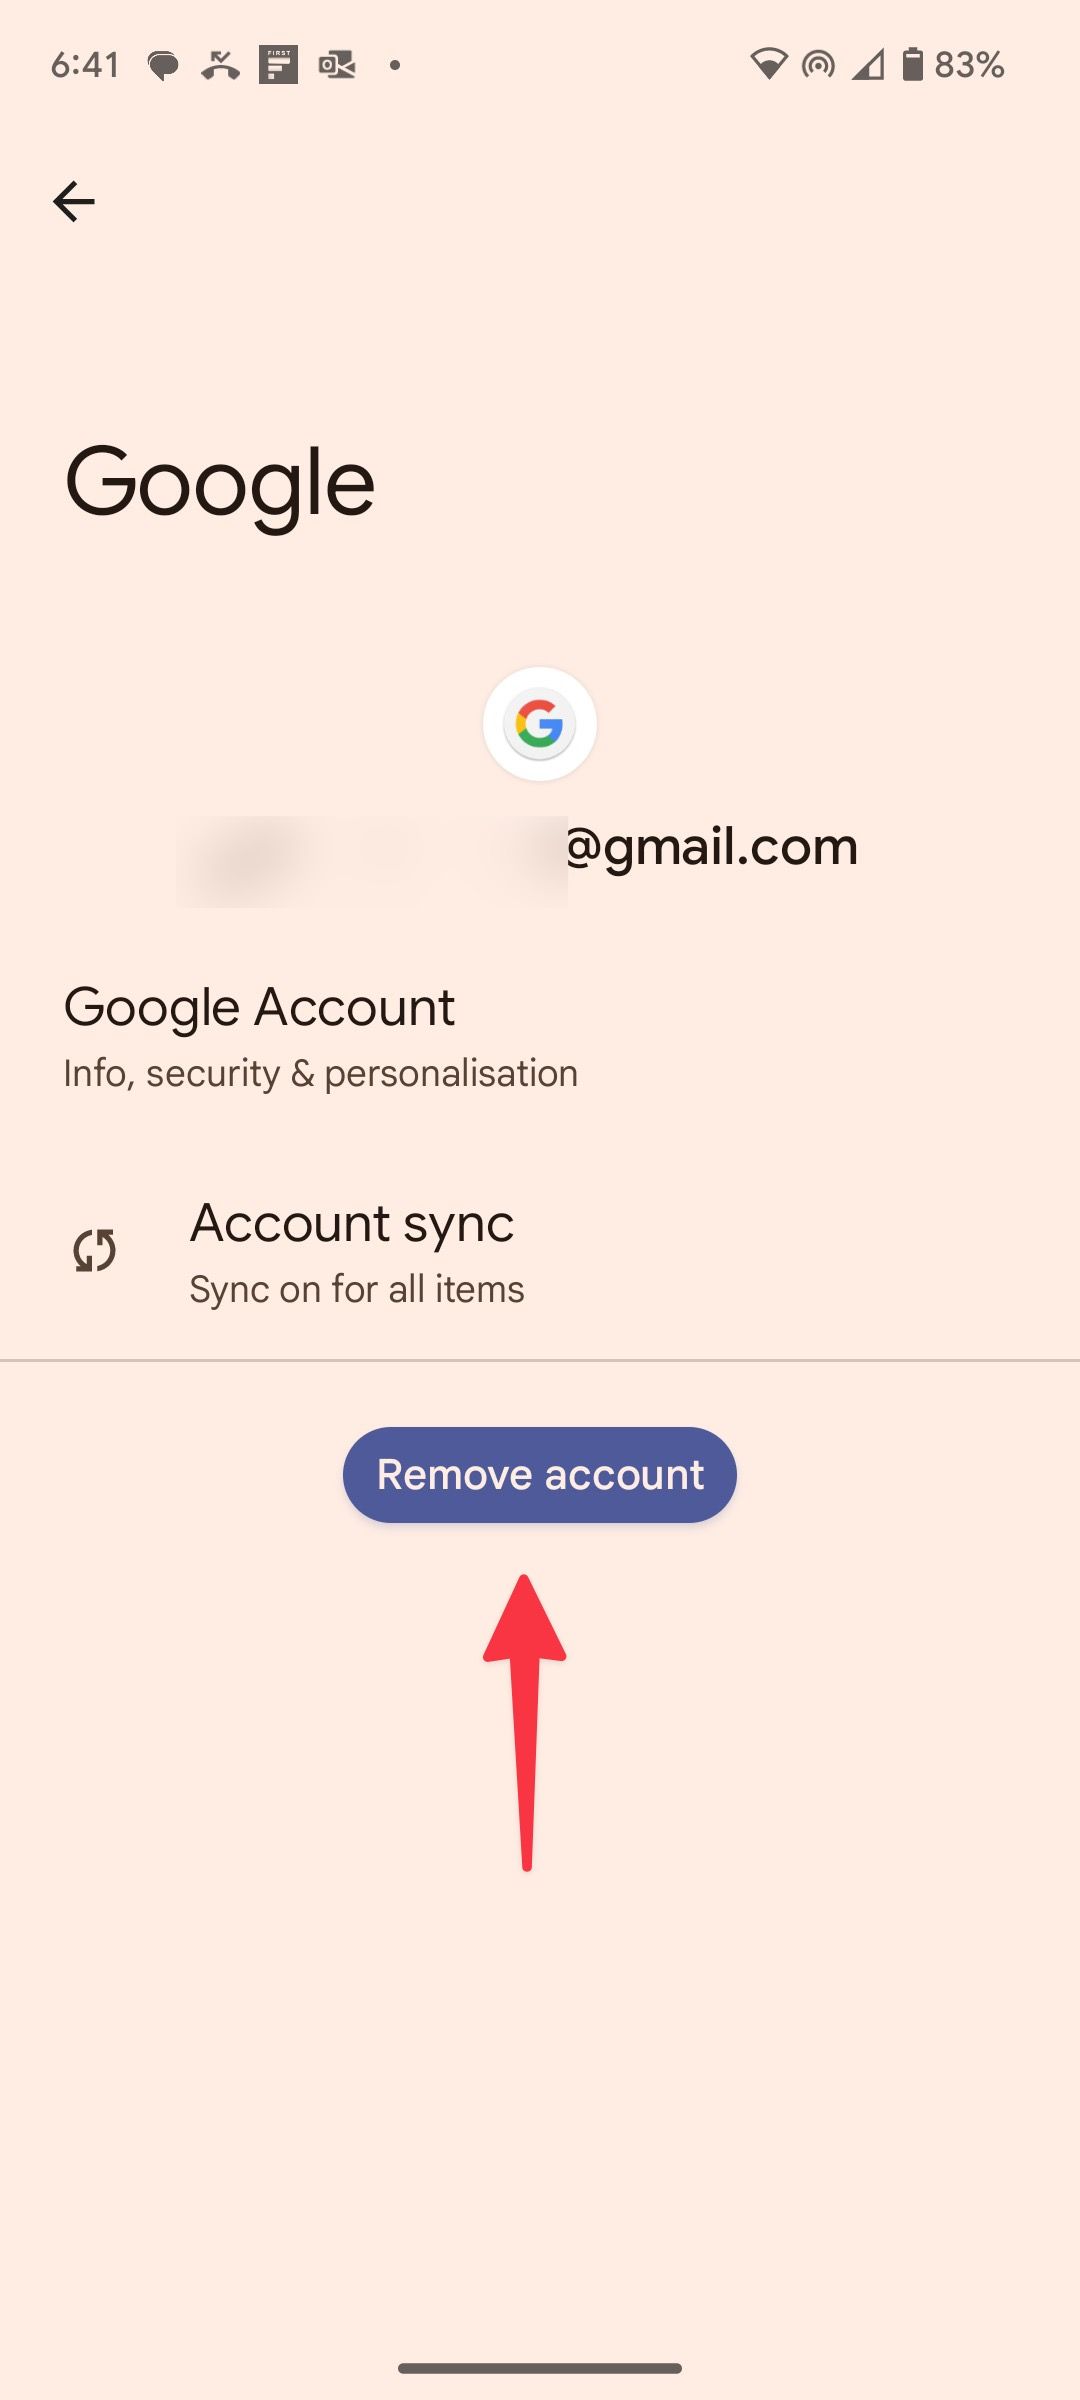 Toque em Remover conta para remover a conta do Google do seu dispositivo Android